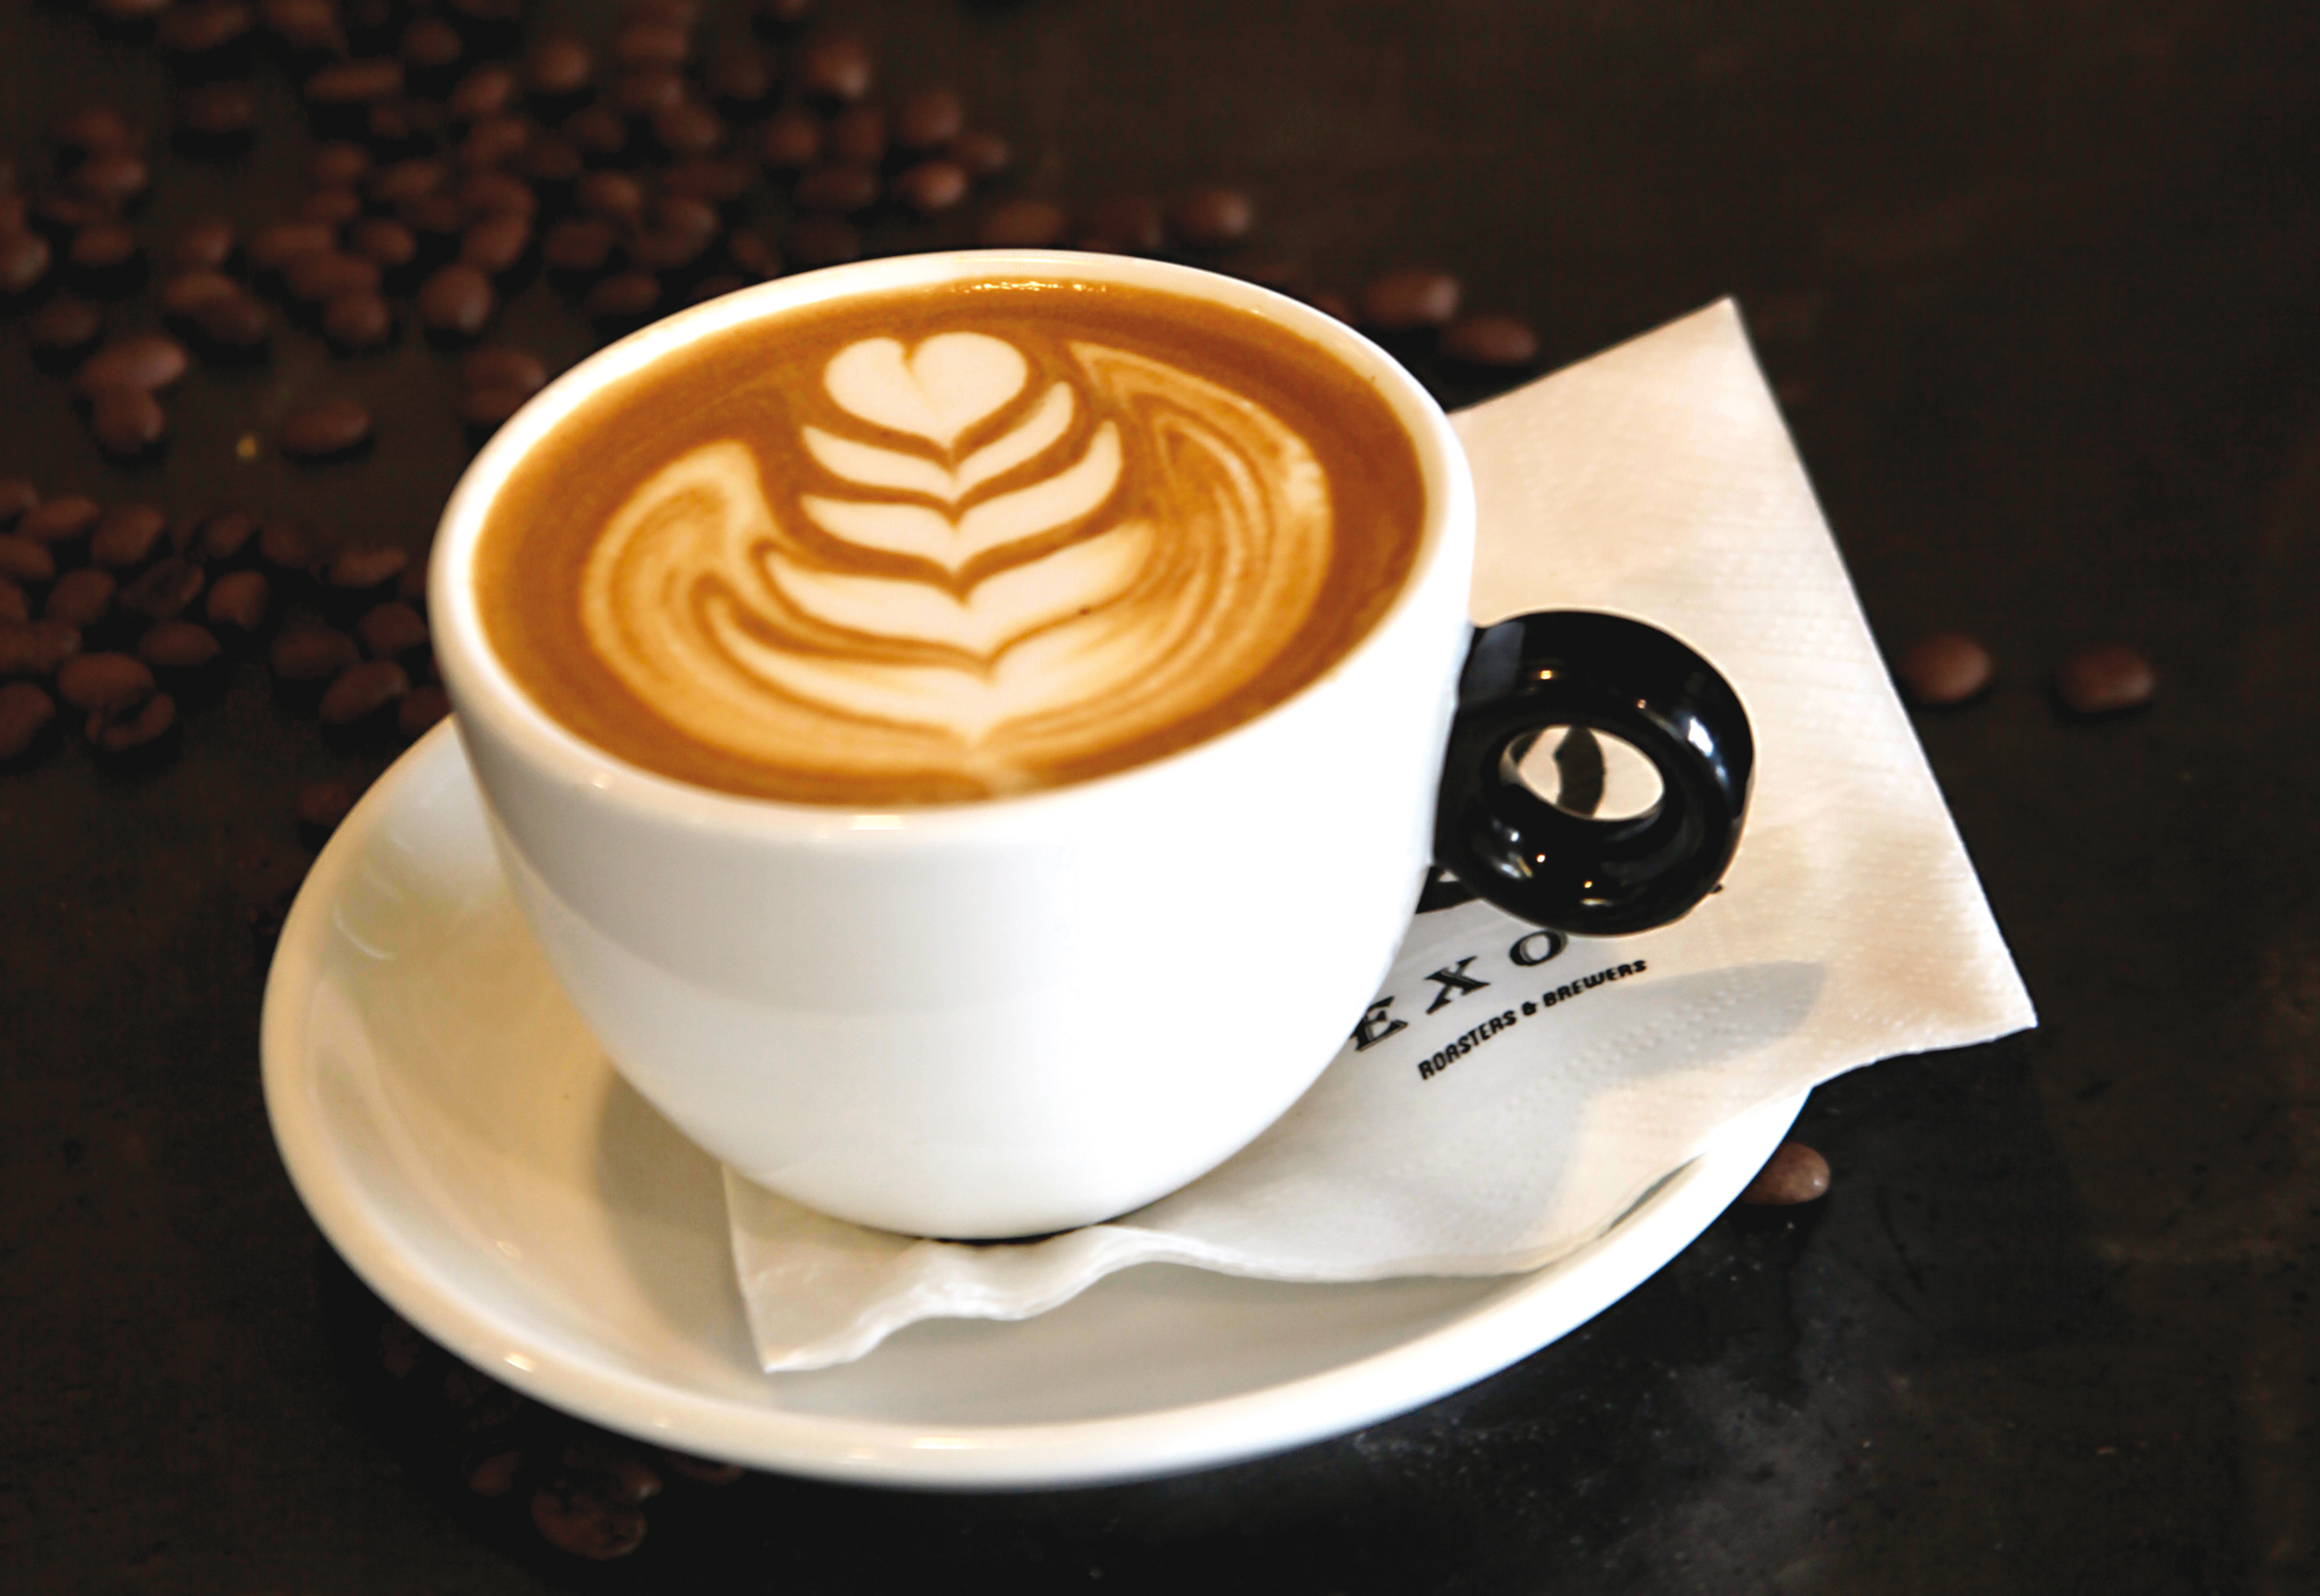 Ποια επαγγέλματα καταναλώνουν τον περισσότερο καφέ;